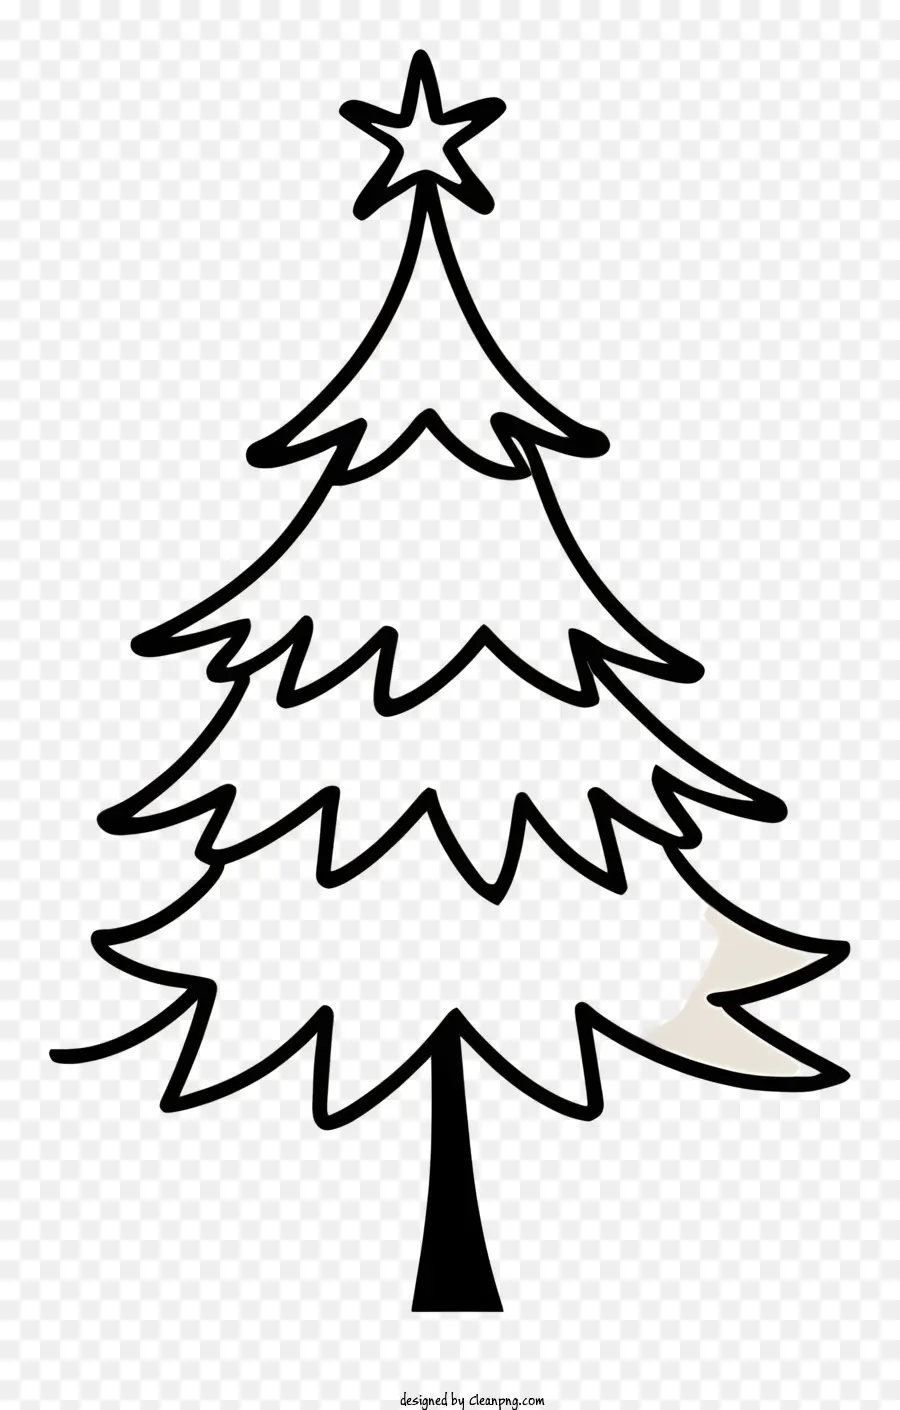 Weihnachtsbaum - Vektor Weihnachtsbaum mit weißen Lichtern, Dekorationen. 
Skalierbar, schattenlos